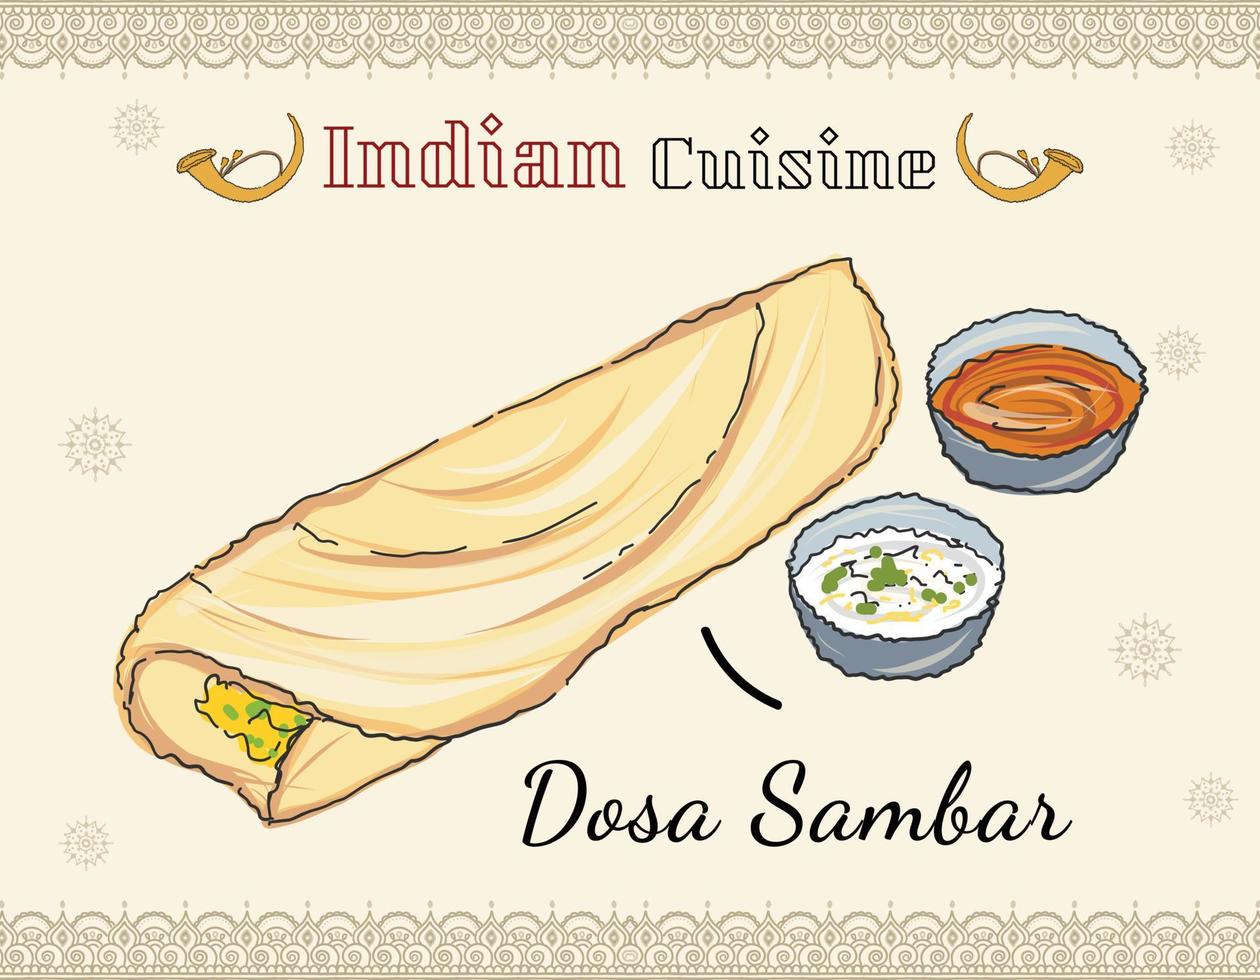 papieren masala dosa, Zuid-Indiase traditionele maaltijd geserveerd met sambhar en kokoschutney. traditioneel Zuid-Indiaas eten. vector